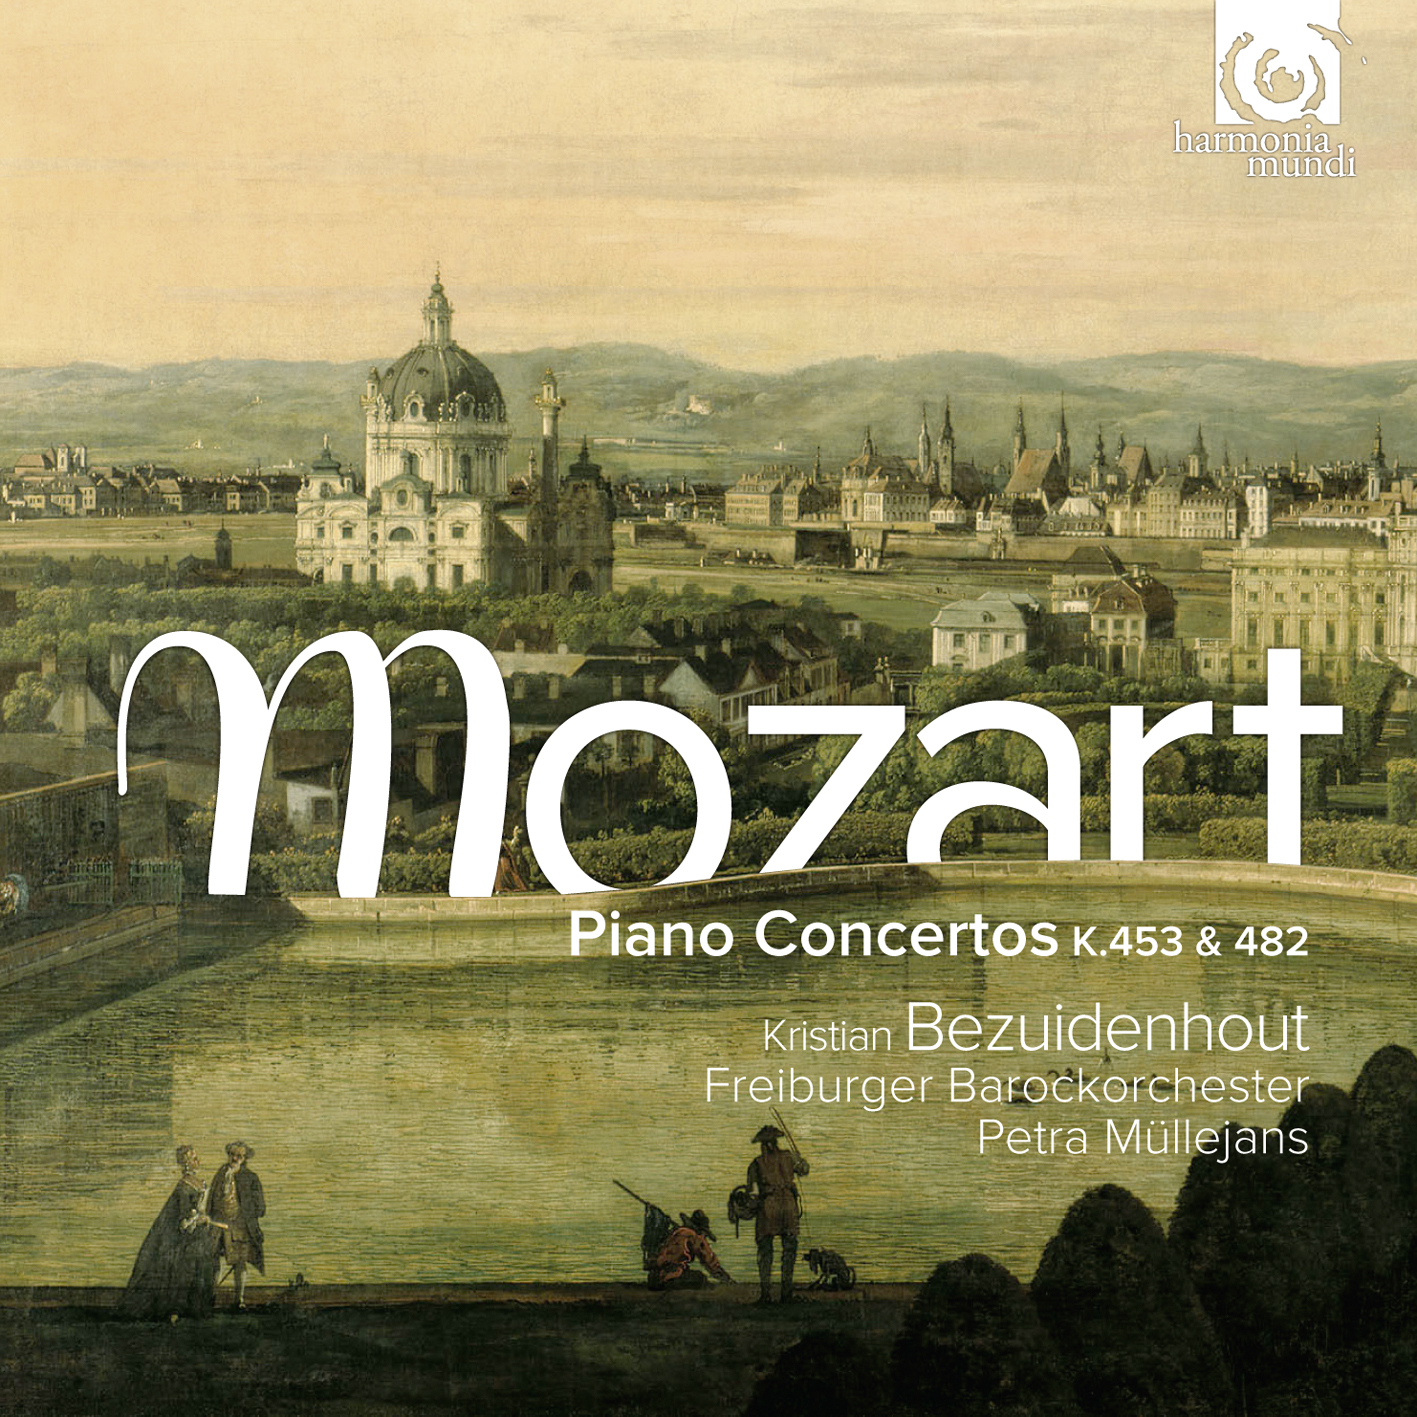 Piano Concerto No.22 K.482 in E Flat Major: I. Allegro